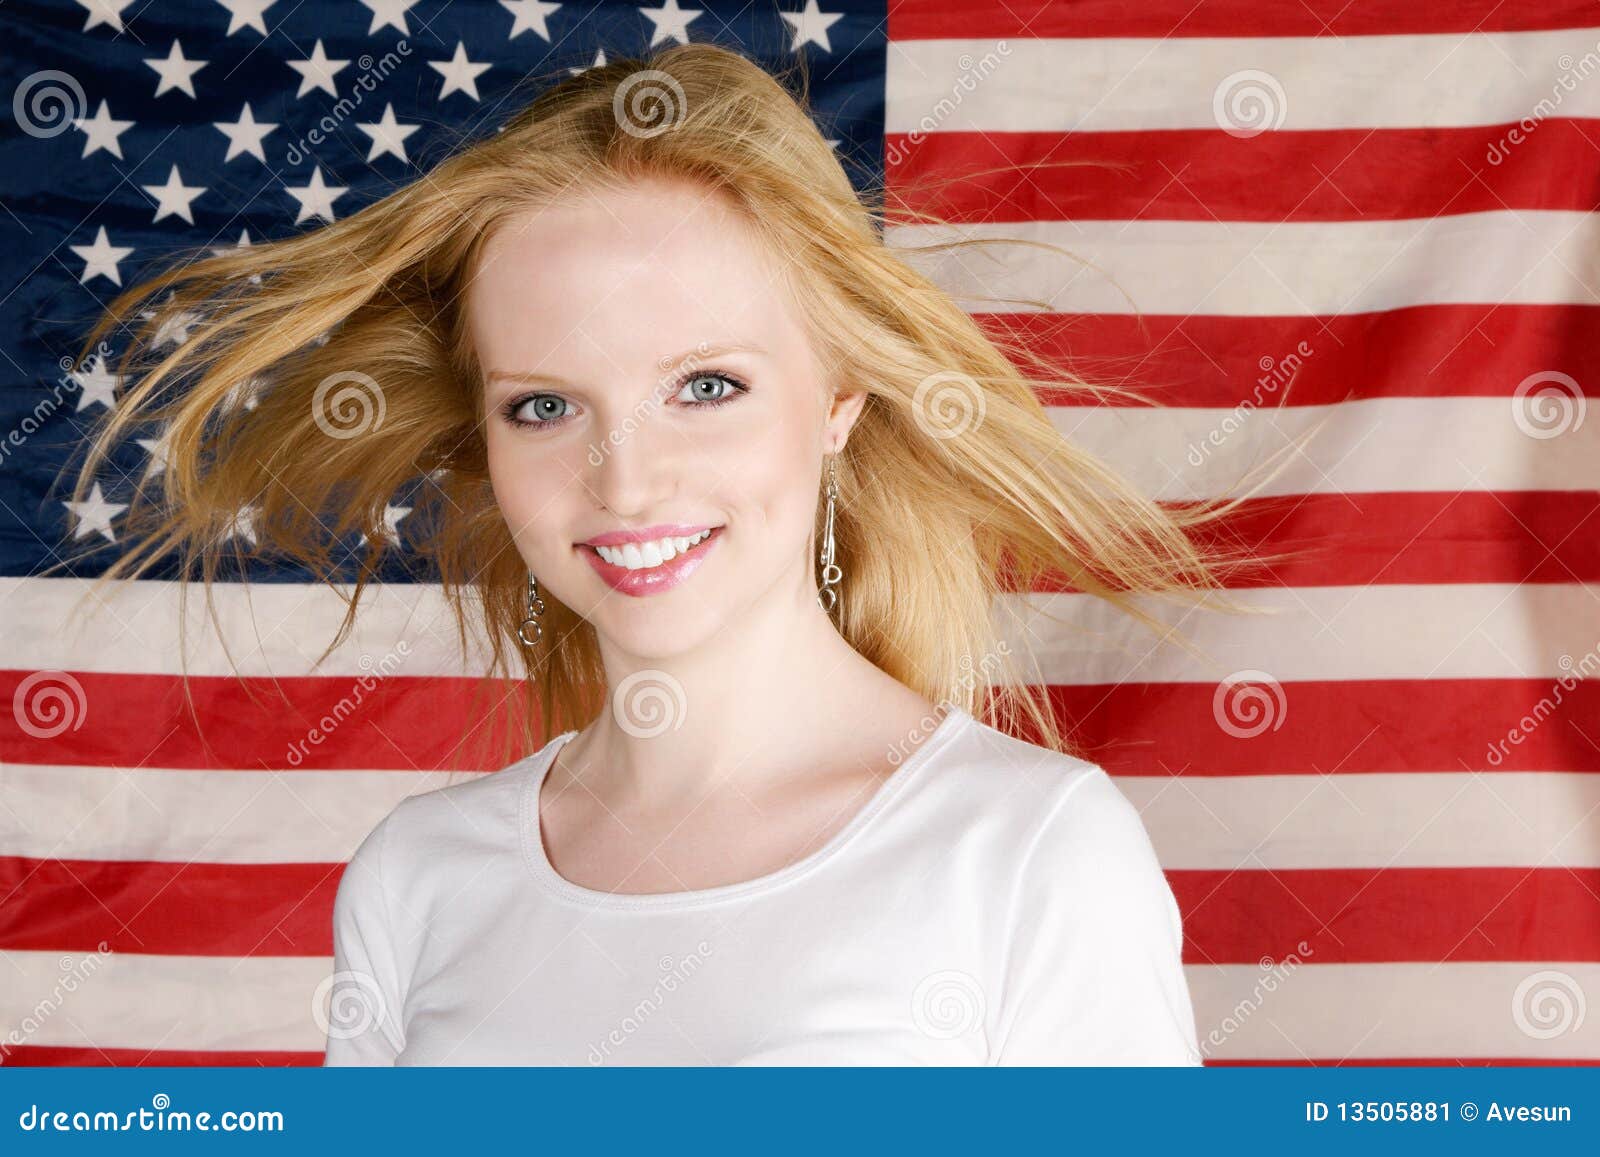 Русский девушки в америке. Американские политики девушки. Девочка Америка. Портрет Америка девушка. Девушка с флагом США.